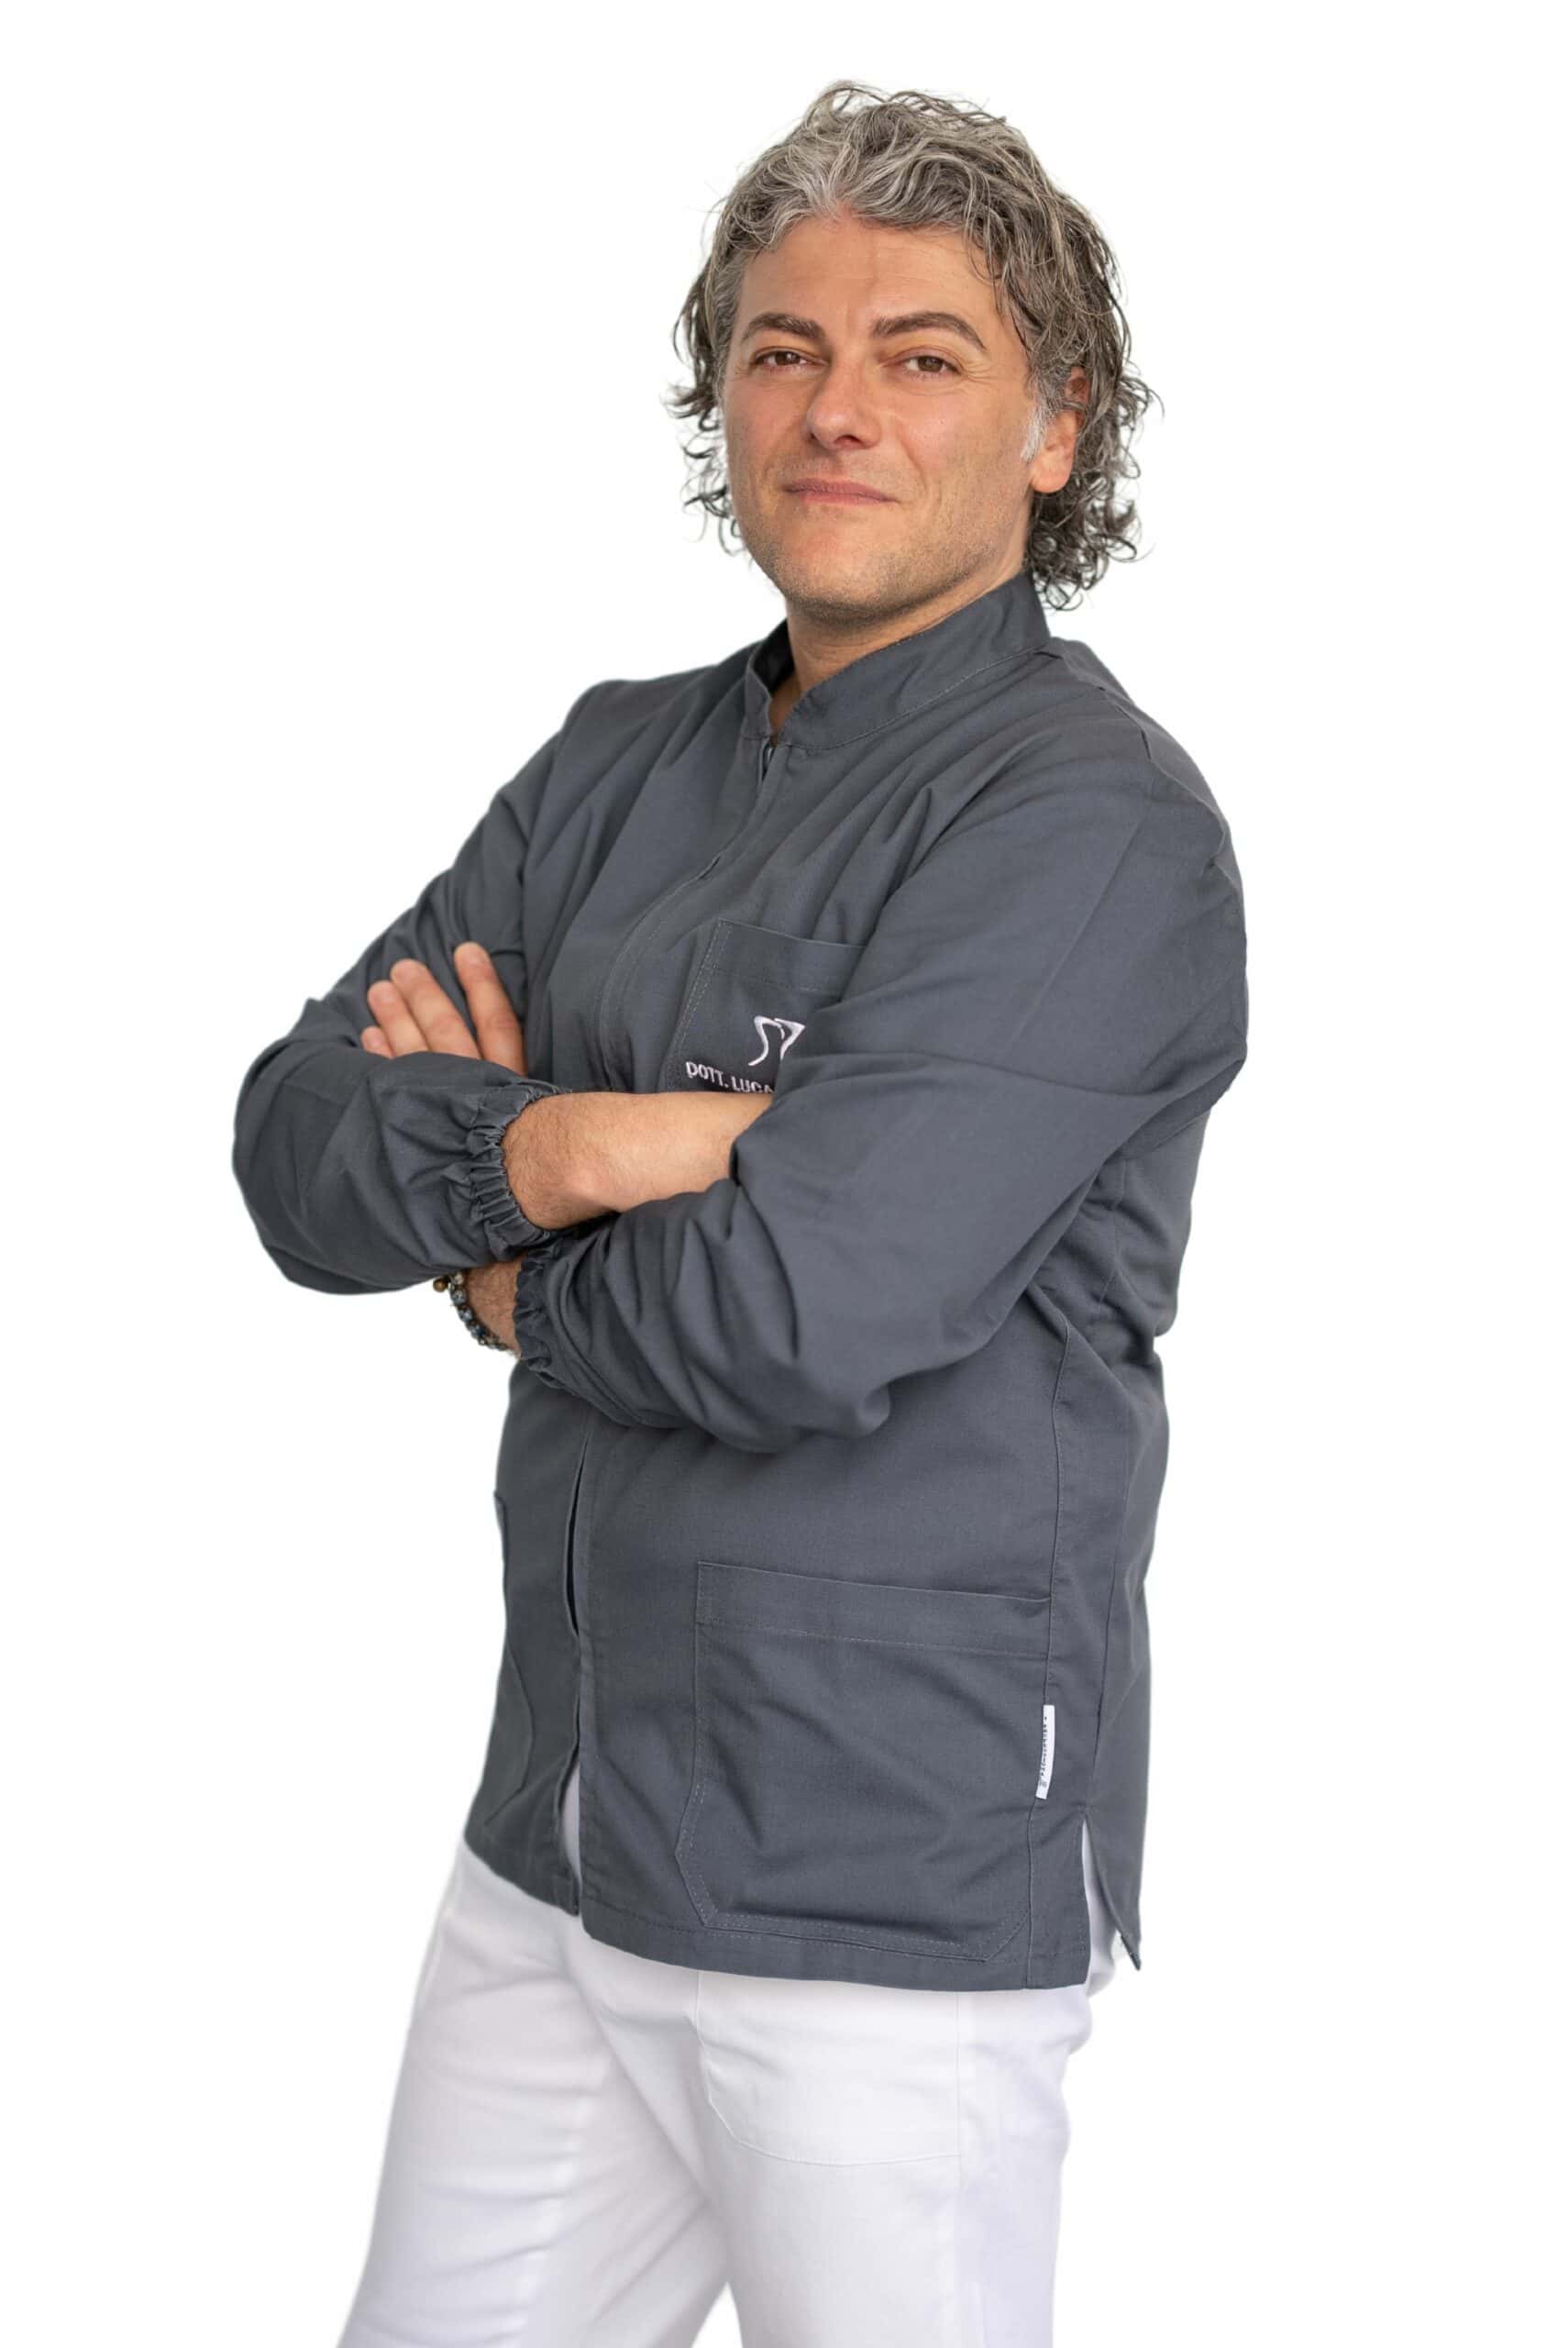 Uno chef fiducioso con i capelli grigi in piedi, le braccia incrociate nella sua giacca da chef grigia e pantaloni bianchi, sorride alla telecamera su uno sfondo bianco.